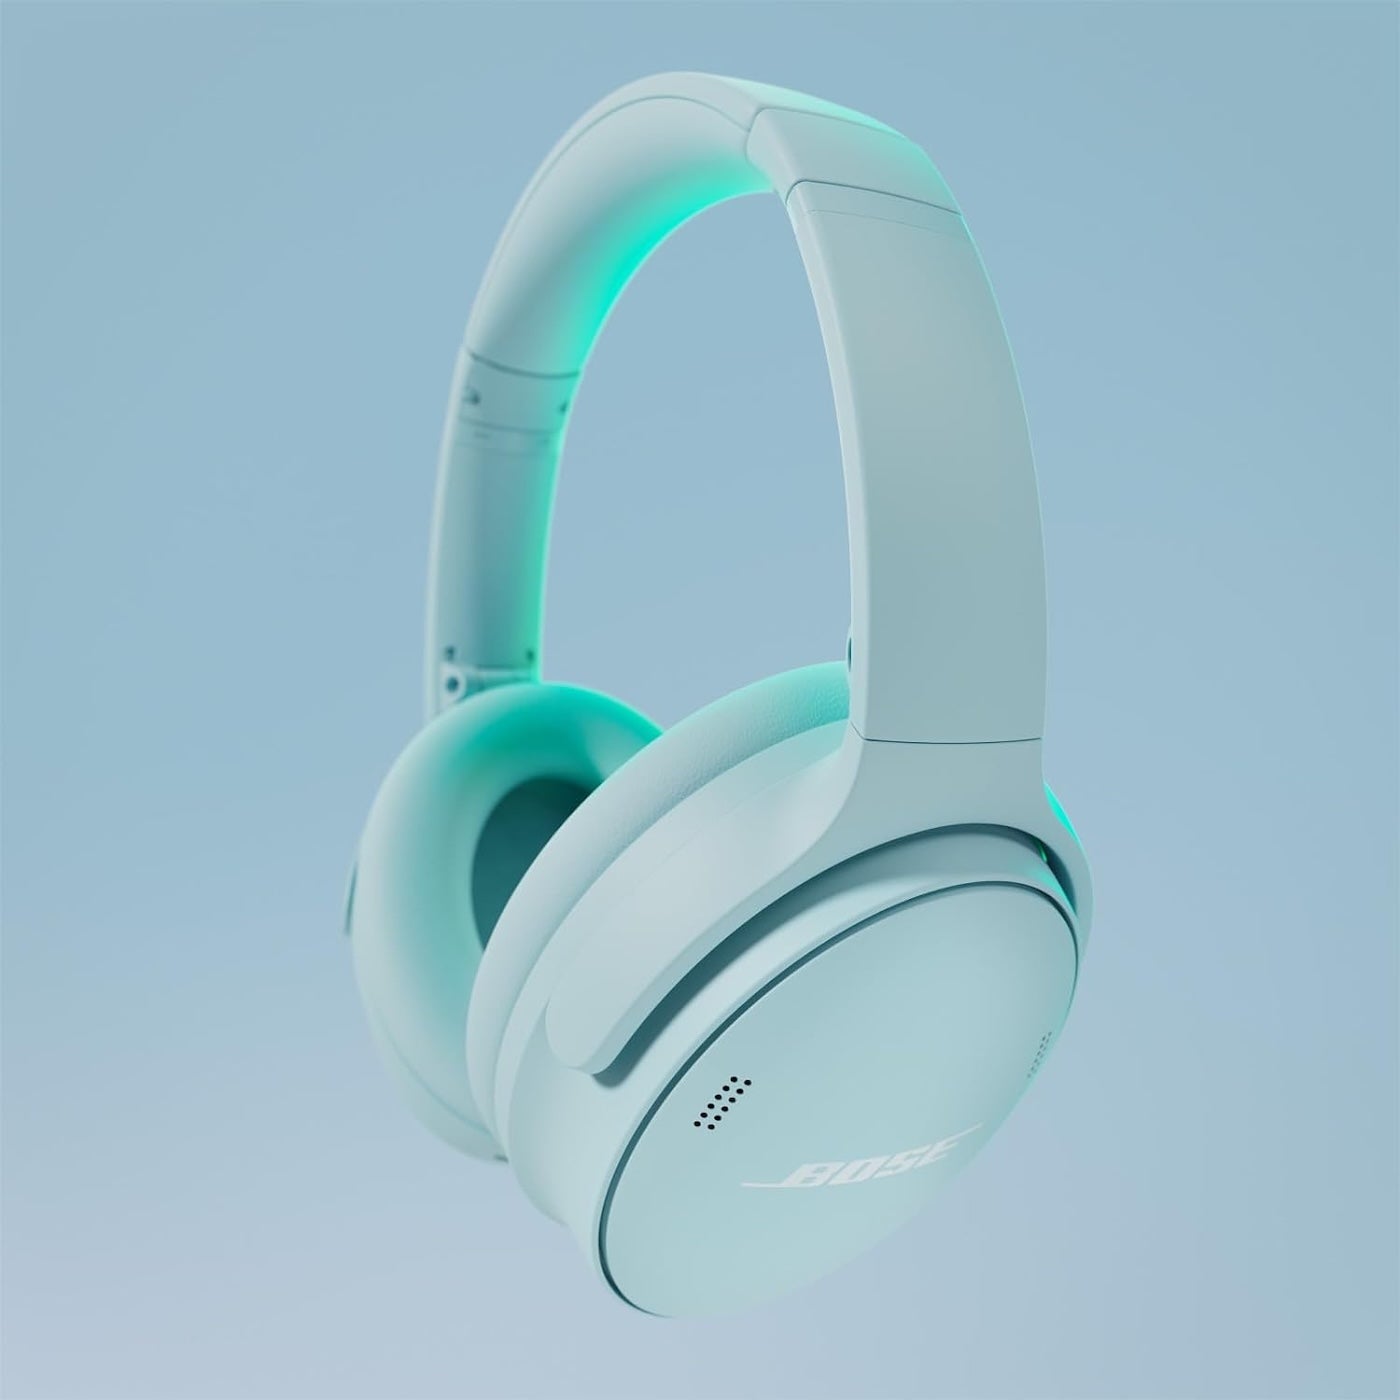 Bose QuietComfort wireless headphones.